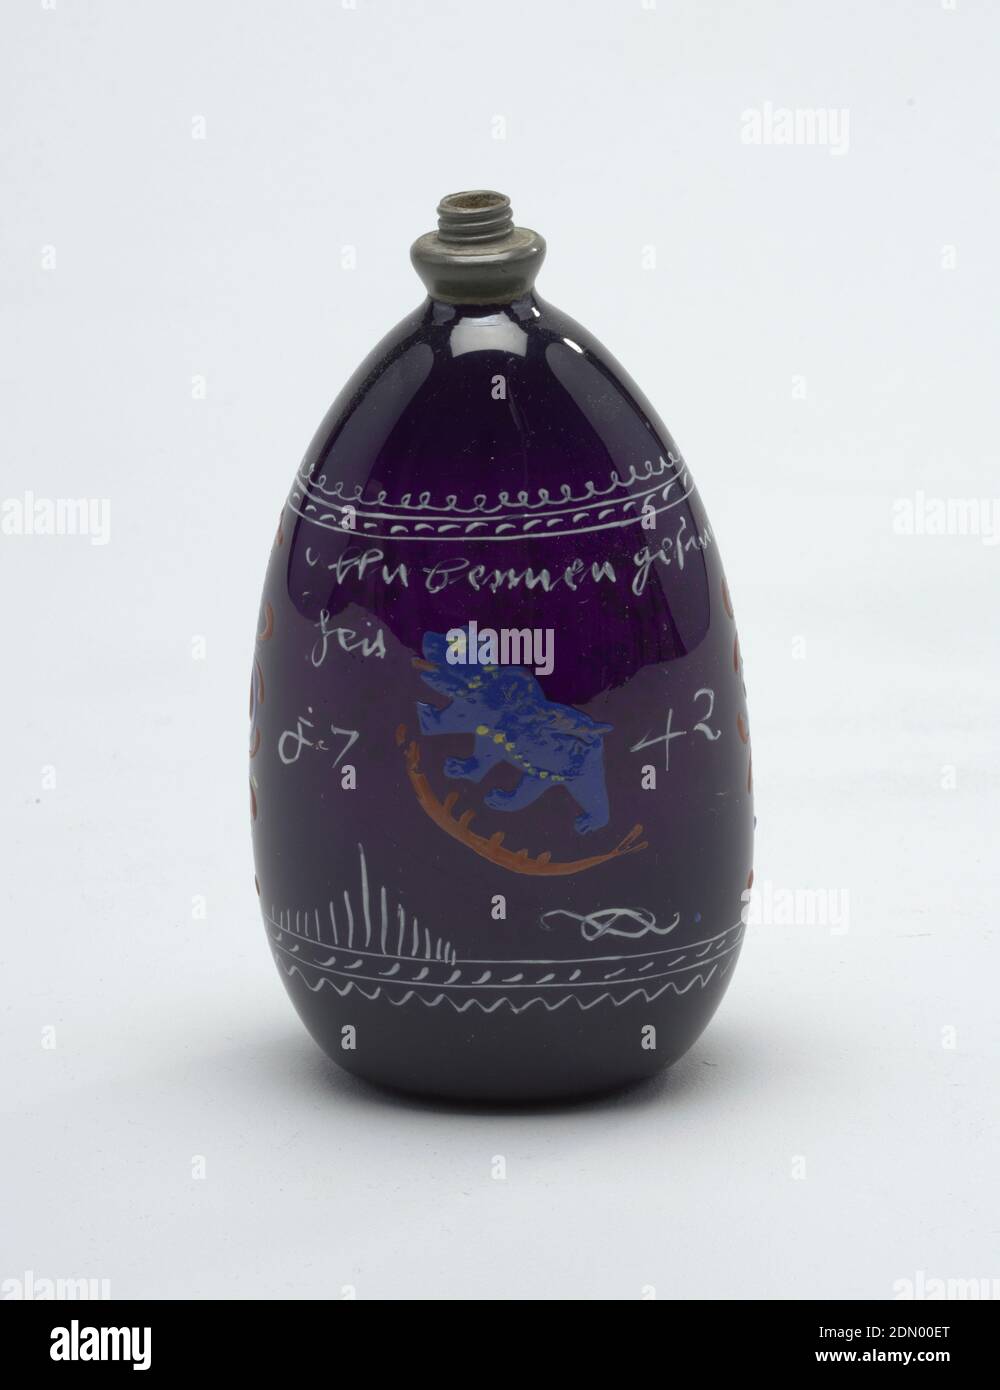 Flasche, bemaltes Glas, tropfenförmiges Glas in dunkelviolett mit bemalter Dekoration., Schweiz, 18. Jahrhundert, Glaswaren, Dekorative Künste, Flasche Stockfoto